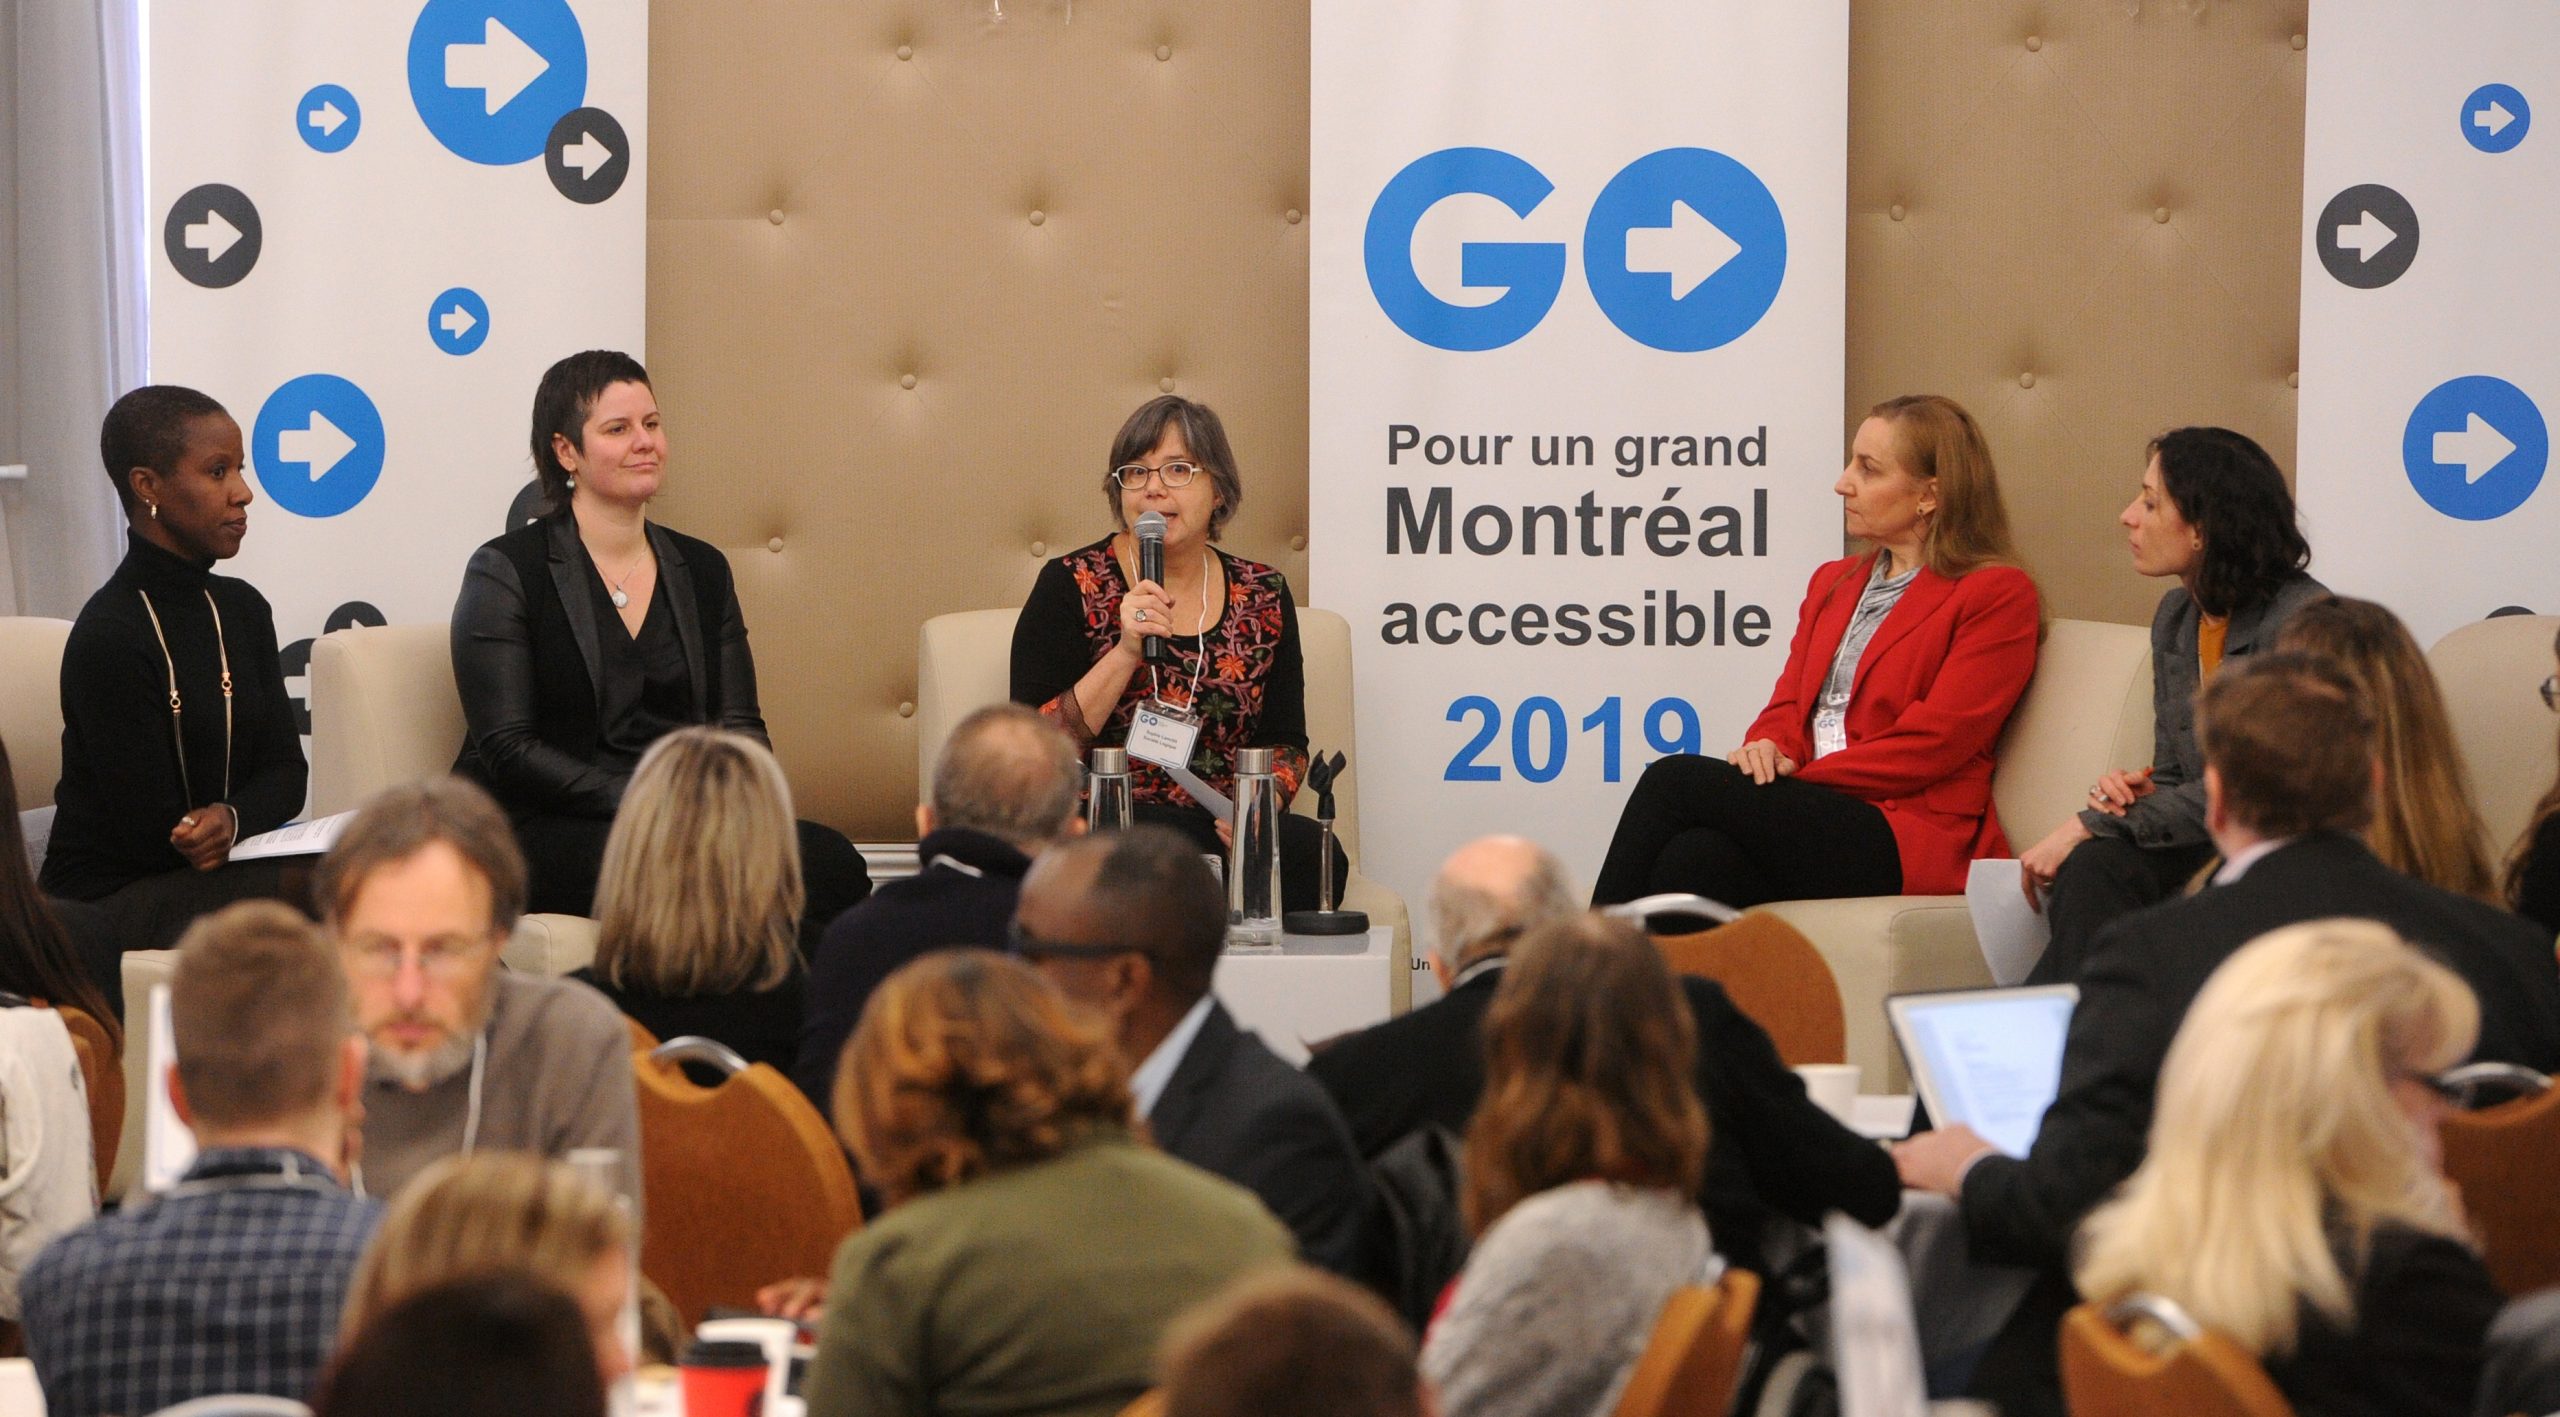 Un panel composé de 3 femmes discutent lors du GO - Pour un grand Montréal accessible en 2019